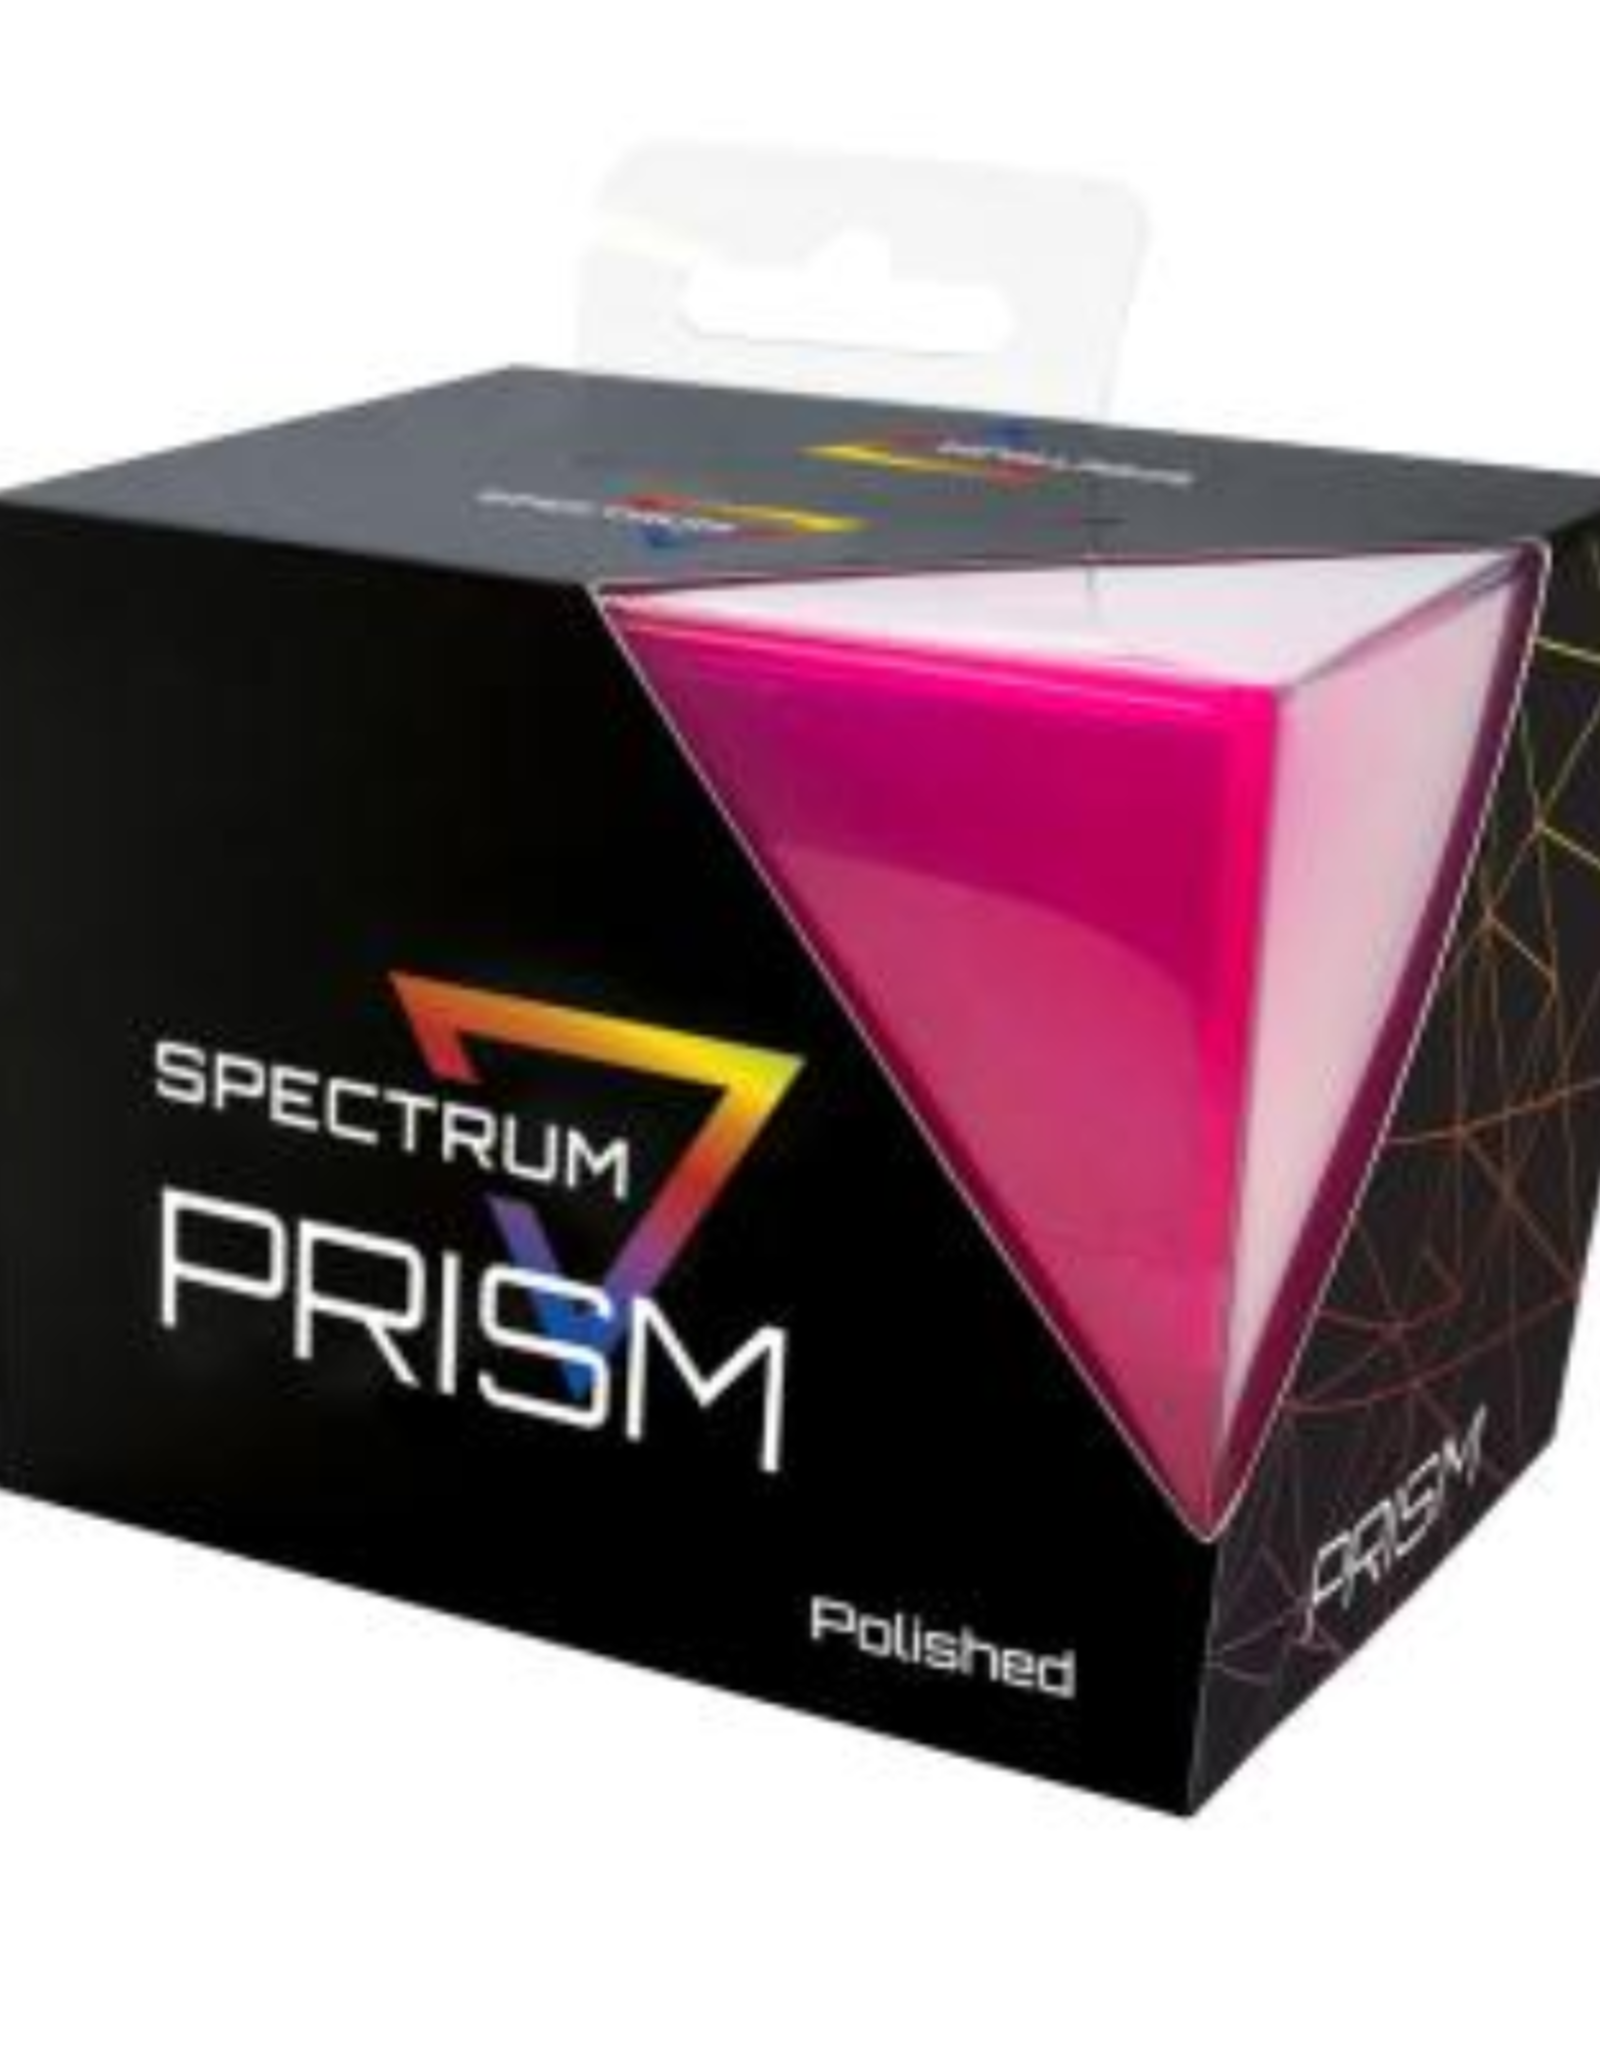 Deck Case Prism: Fuchsia Pink